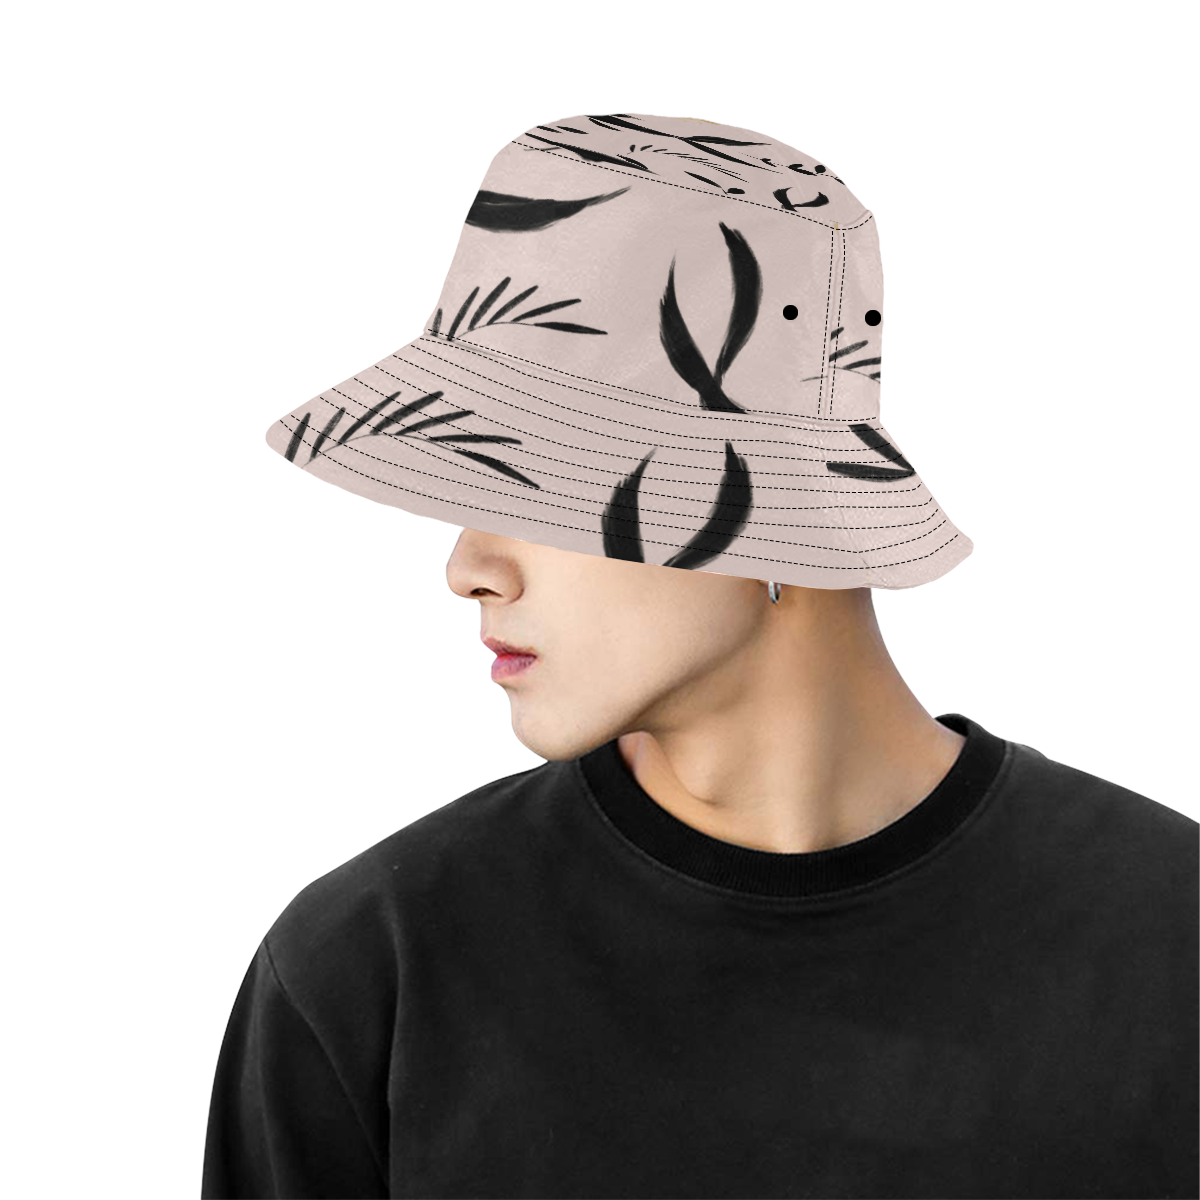 Koi Pond All Over Print Bucket Hat for Men